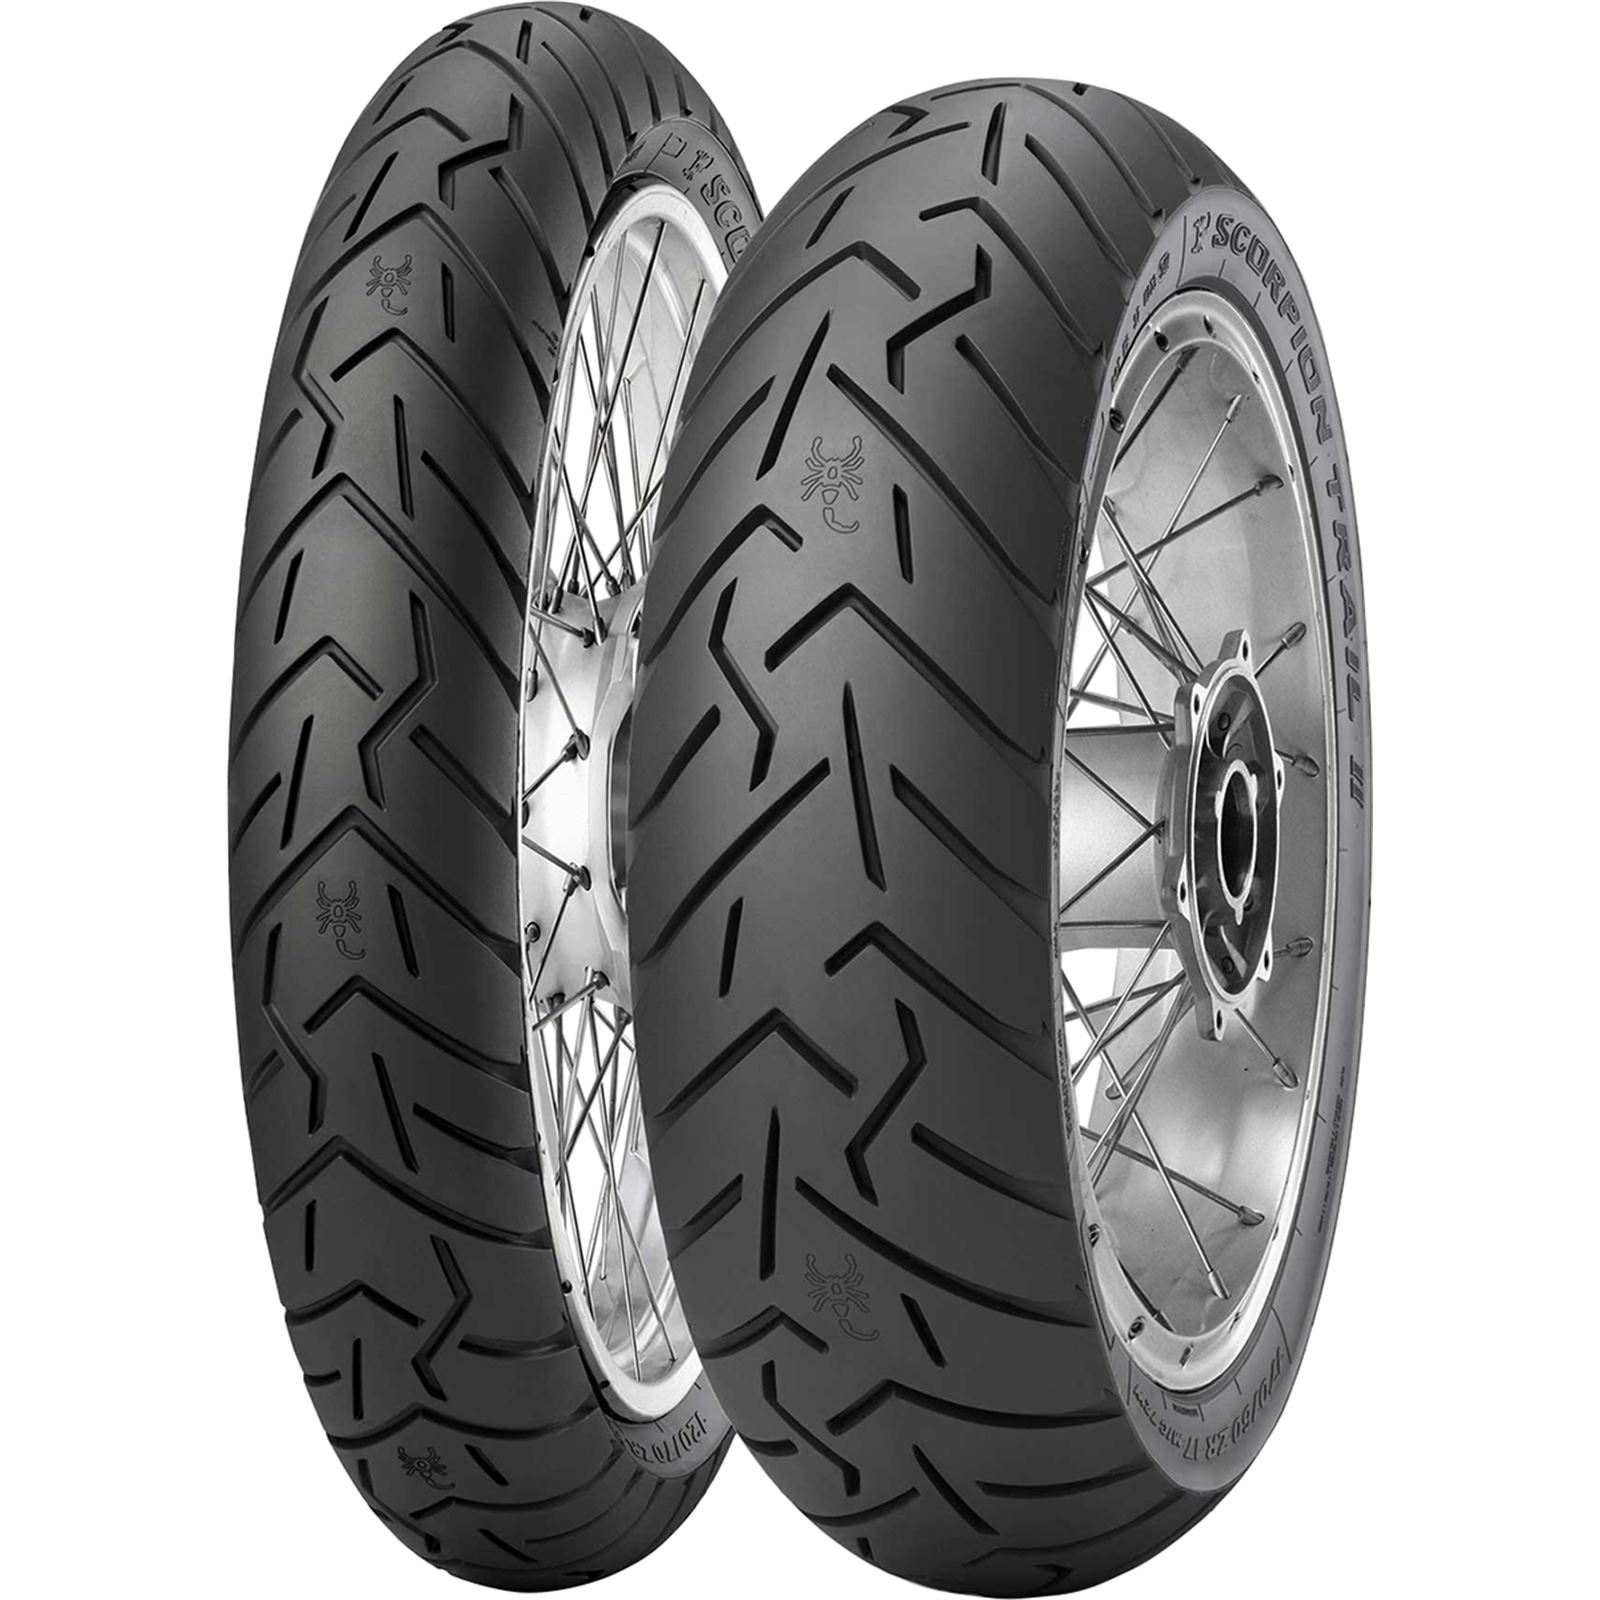 Pirelli Tire - Scorpion™ Trail II - Rear - 170/60R17 - 72W